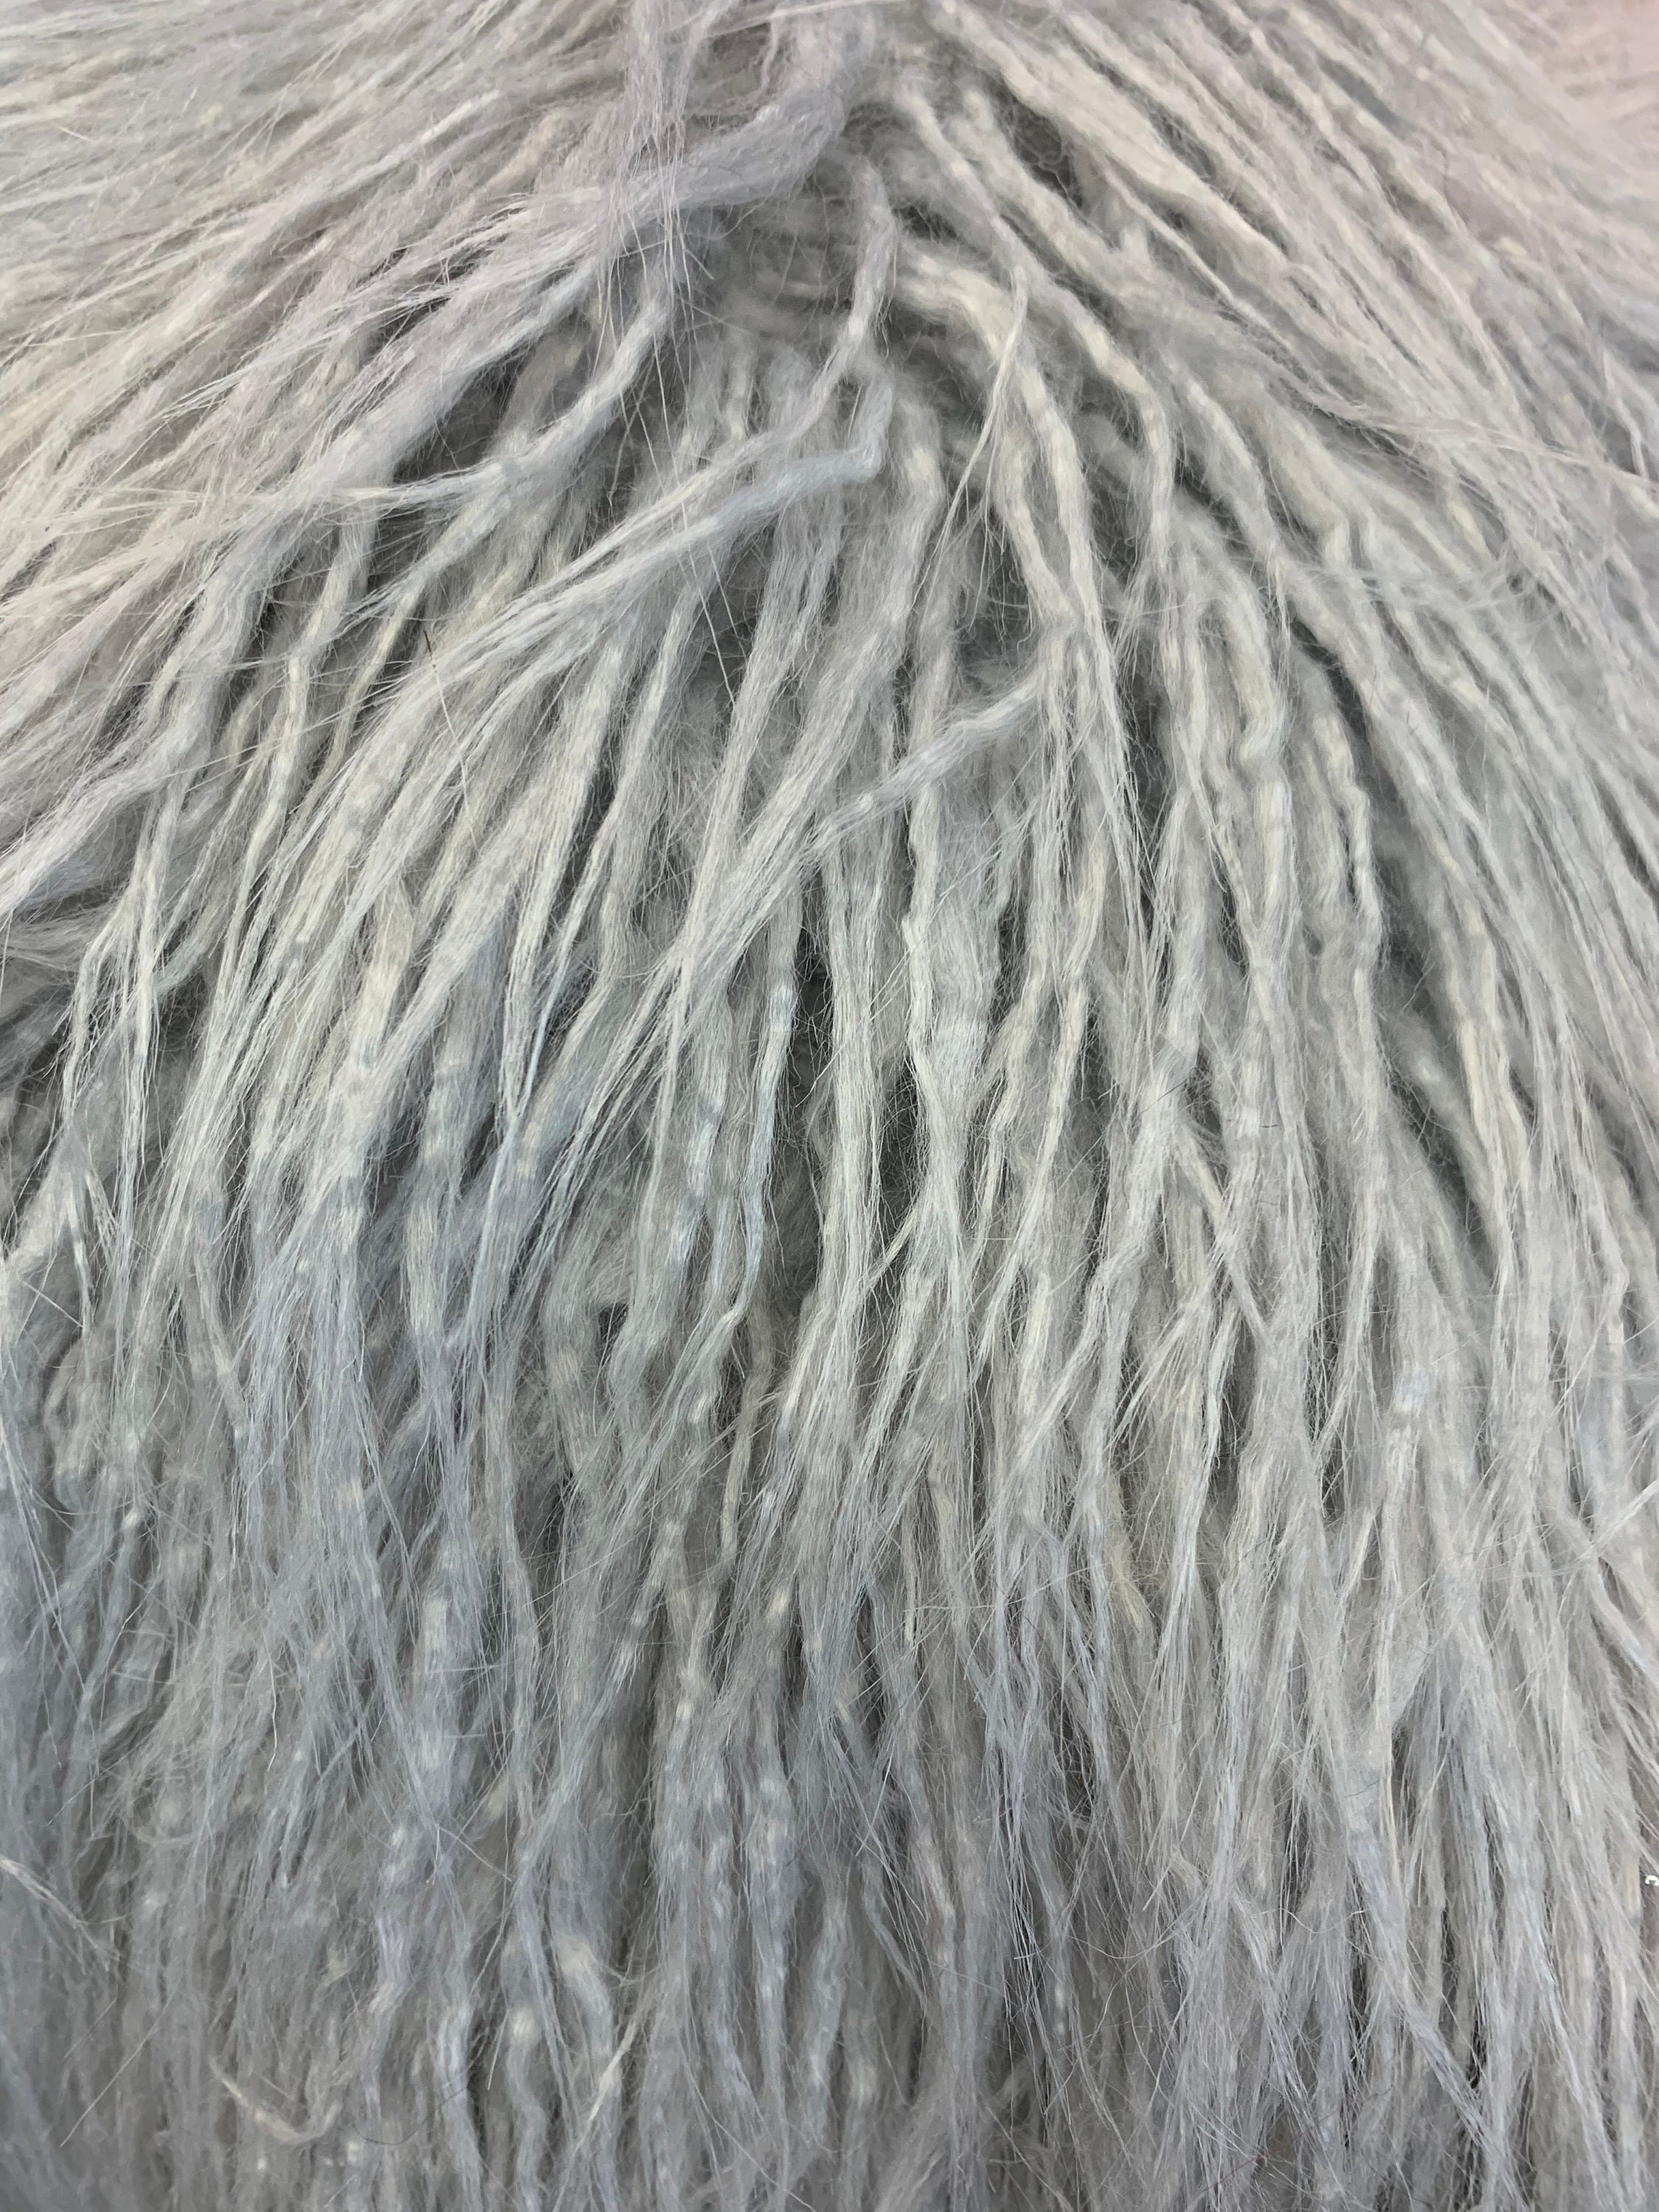 Yeti Mongolian Long Pile Animal Fur Material Gray Fake FAUX | Etsy